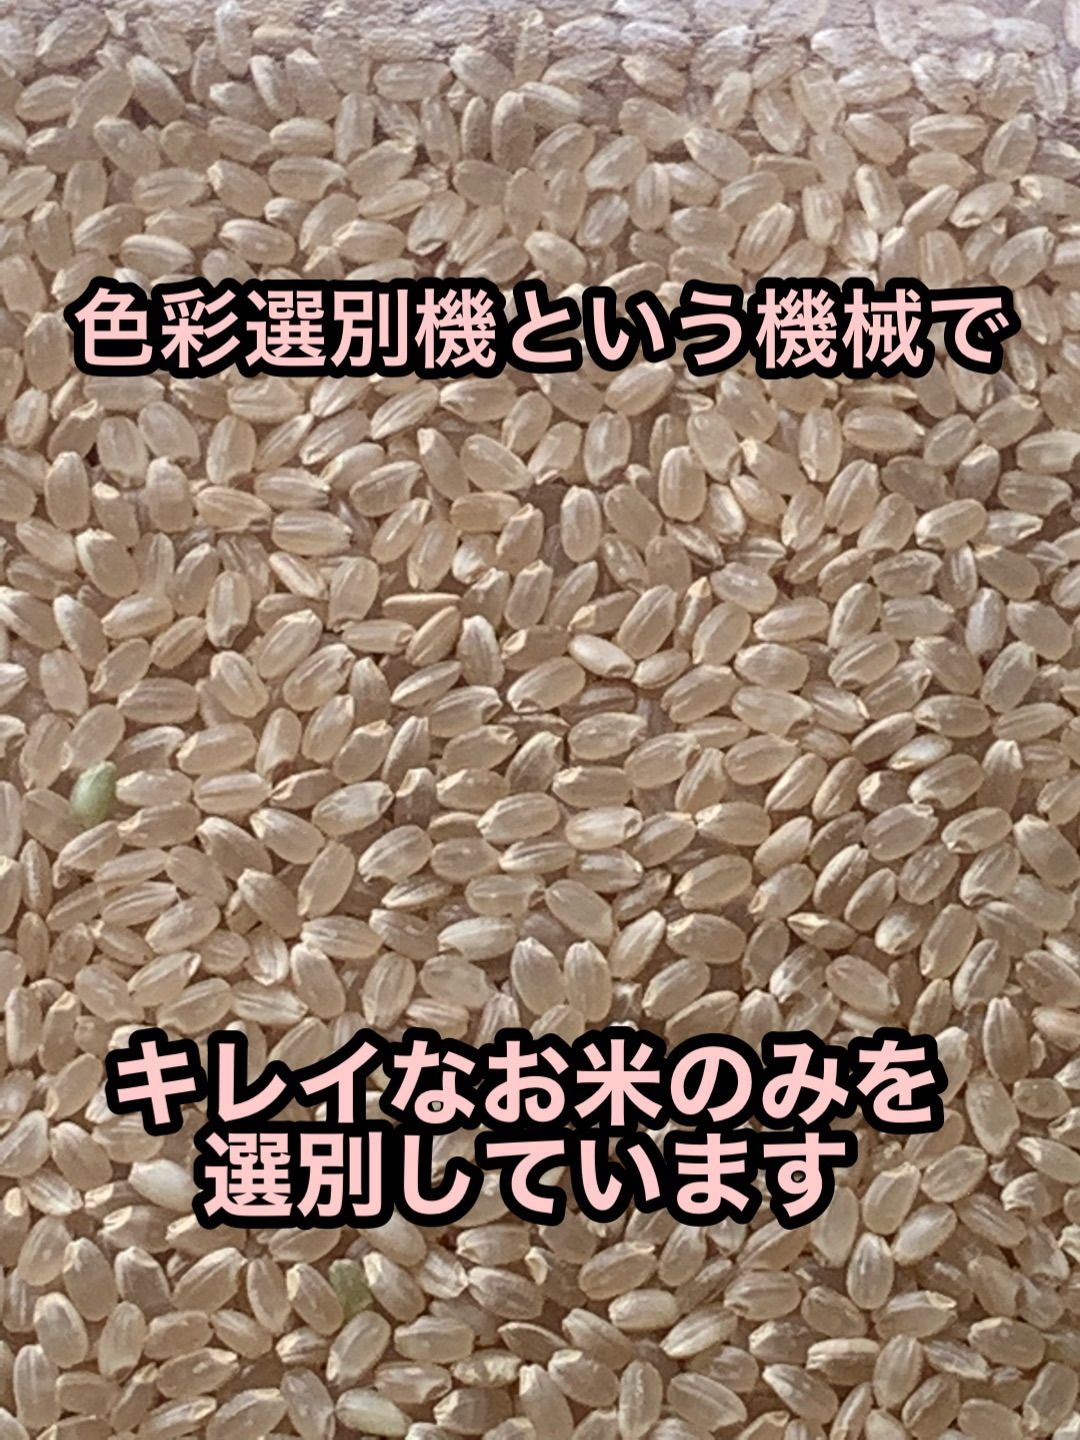 イセヒカリ】玄米10kg 新米 令和5年度兵庫県産 無農薬無施肥の自然栽培